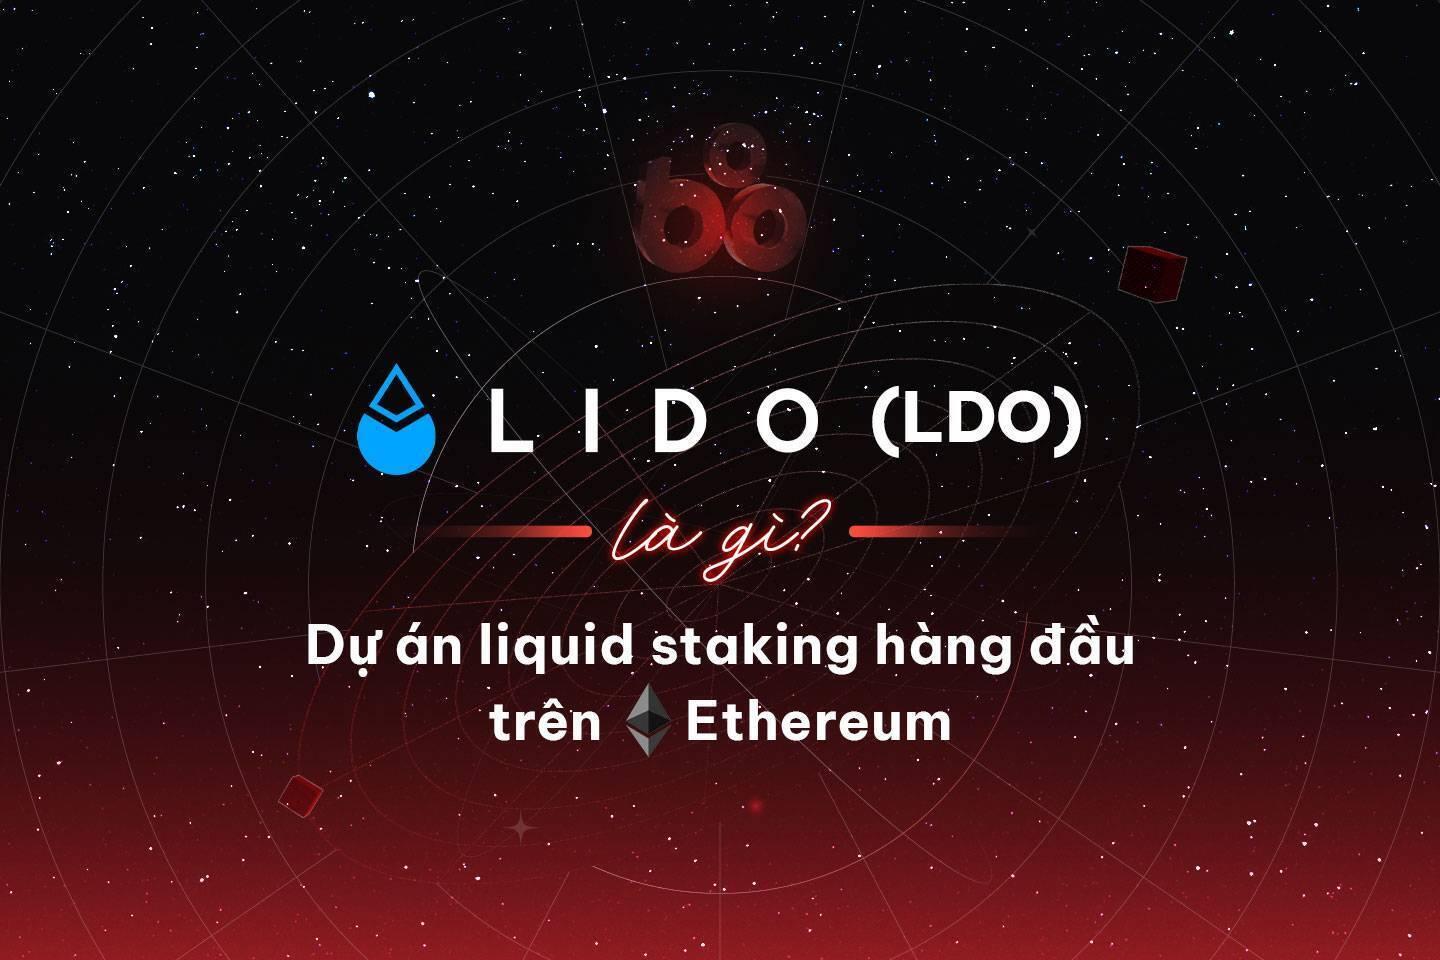 lido-ldo-la-gi-du-an-liquid-staking-hang-dau-tren-ethereum